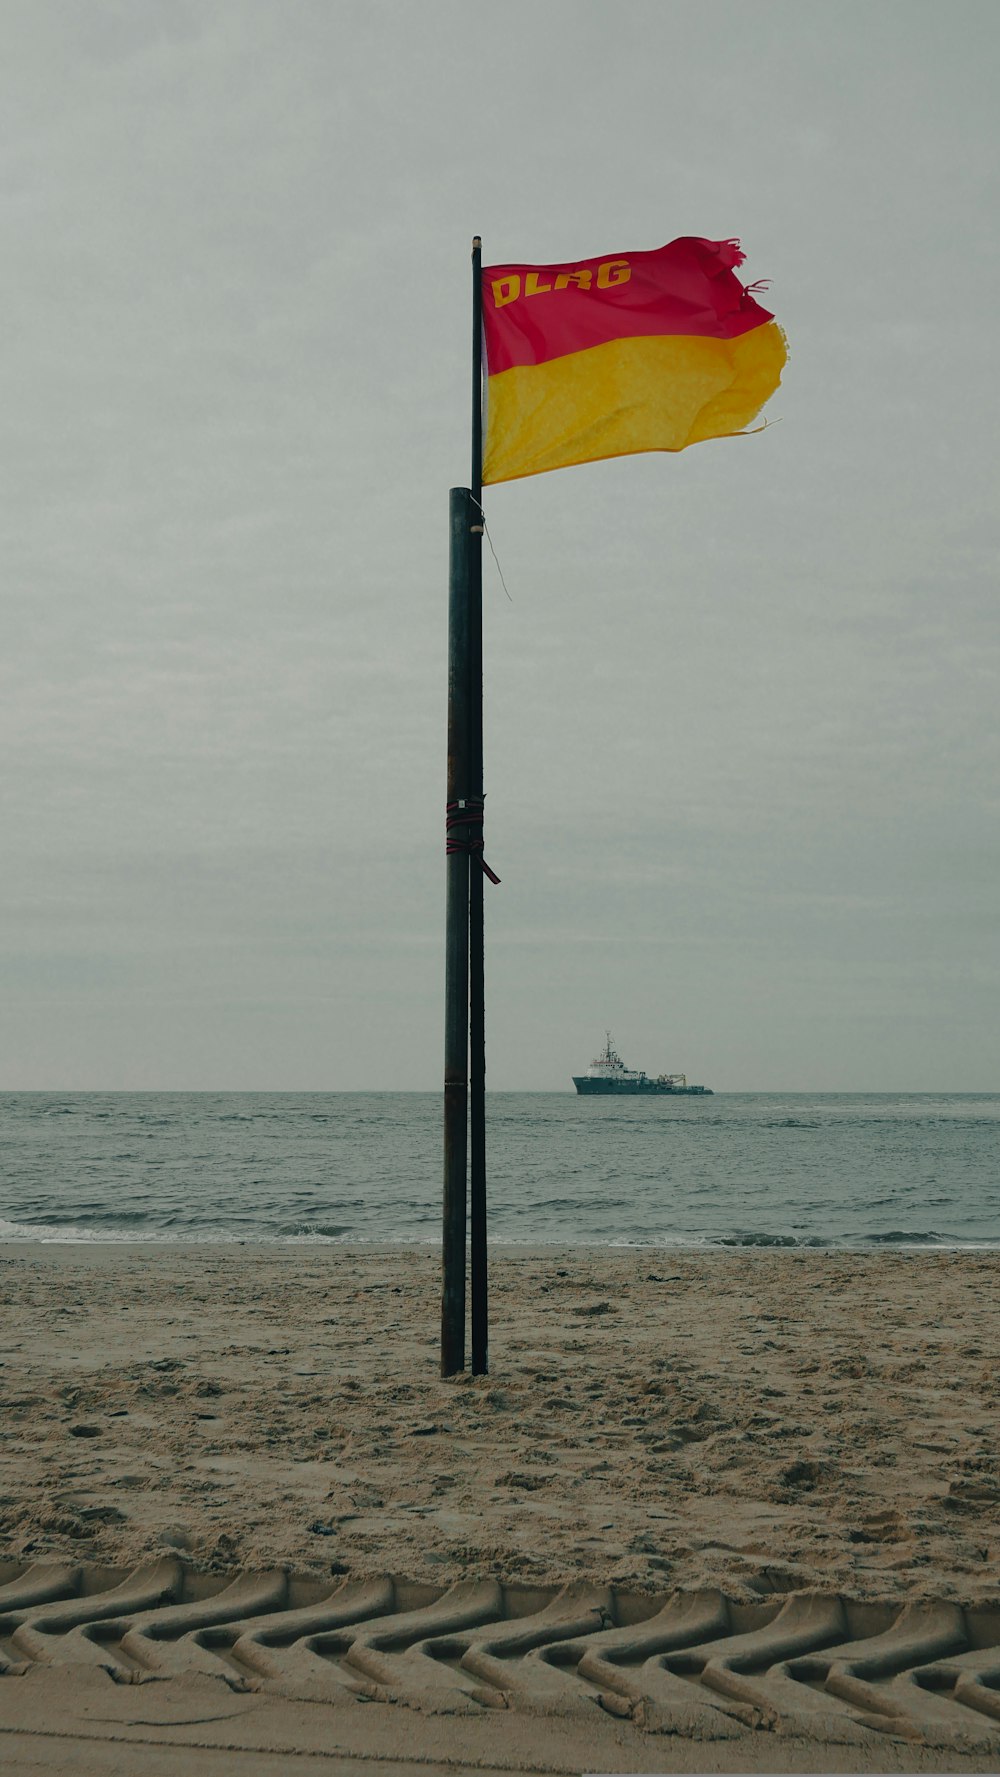 a flag on a pole on a beach